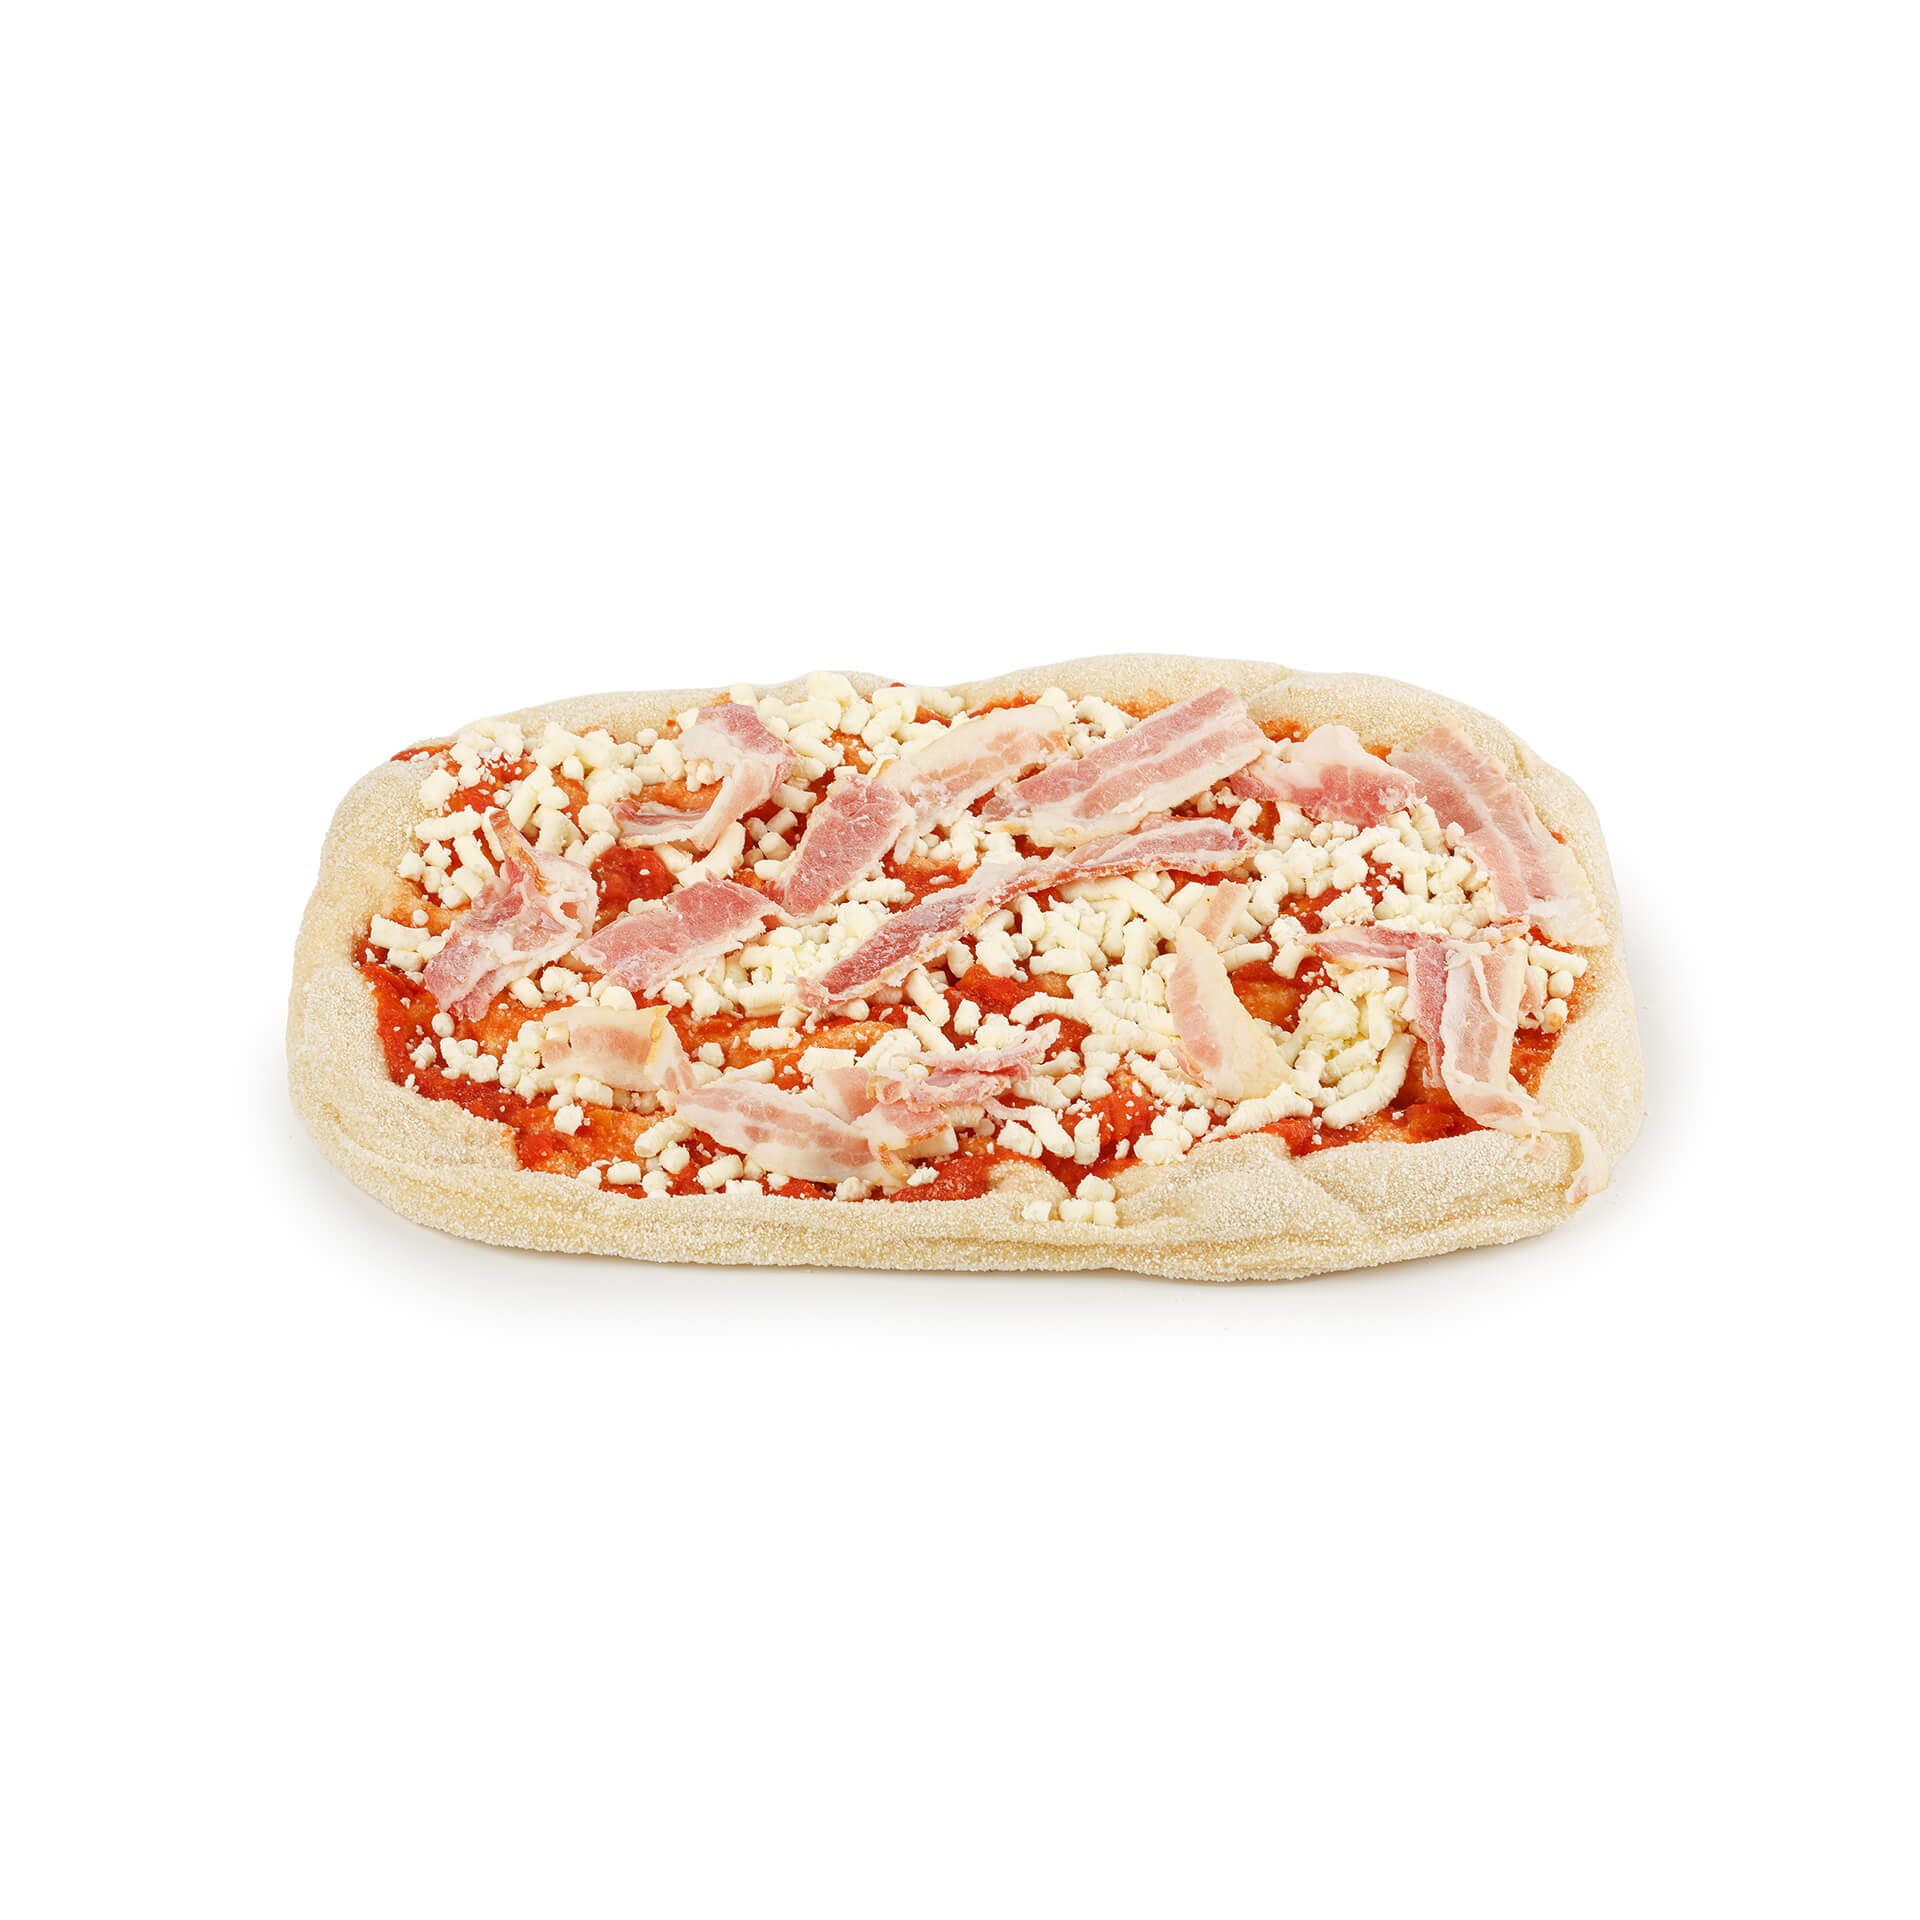 Пицца "Панчетта" с копченым беконом полуфабрикат замороженный Maestrello 415 г 8805LED, общий вид, купить оптом с доставкой по москве и московской области, недорого, низкая цена